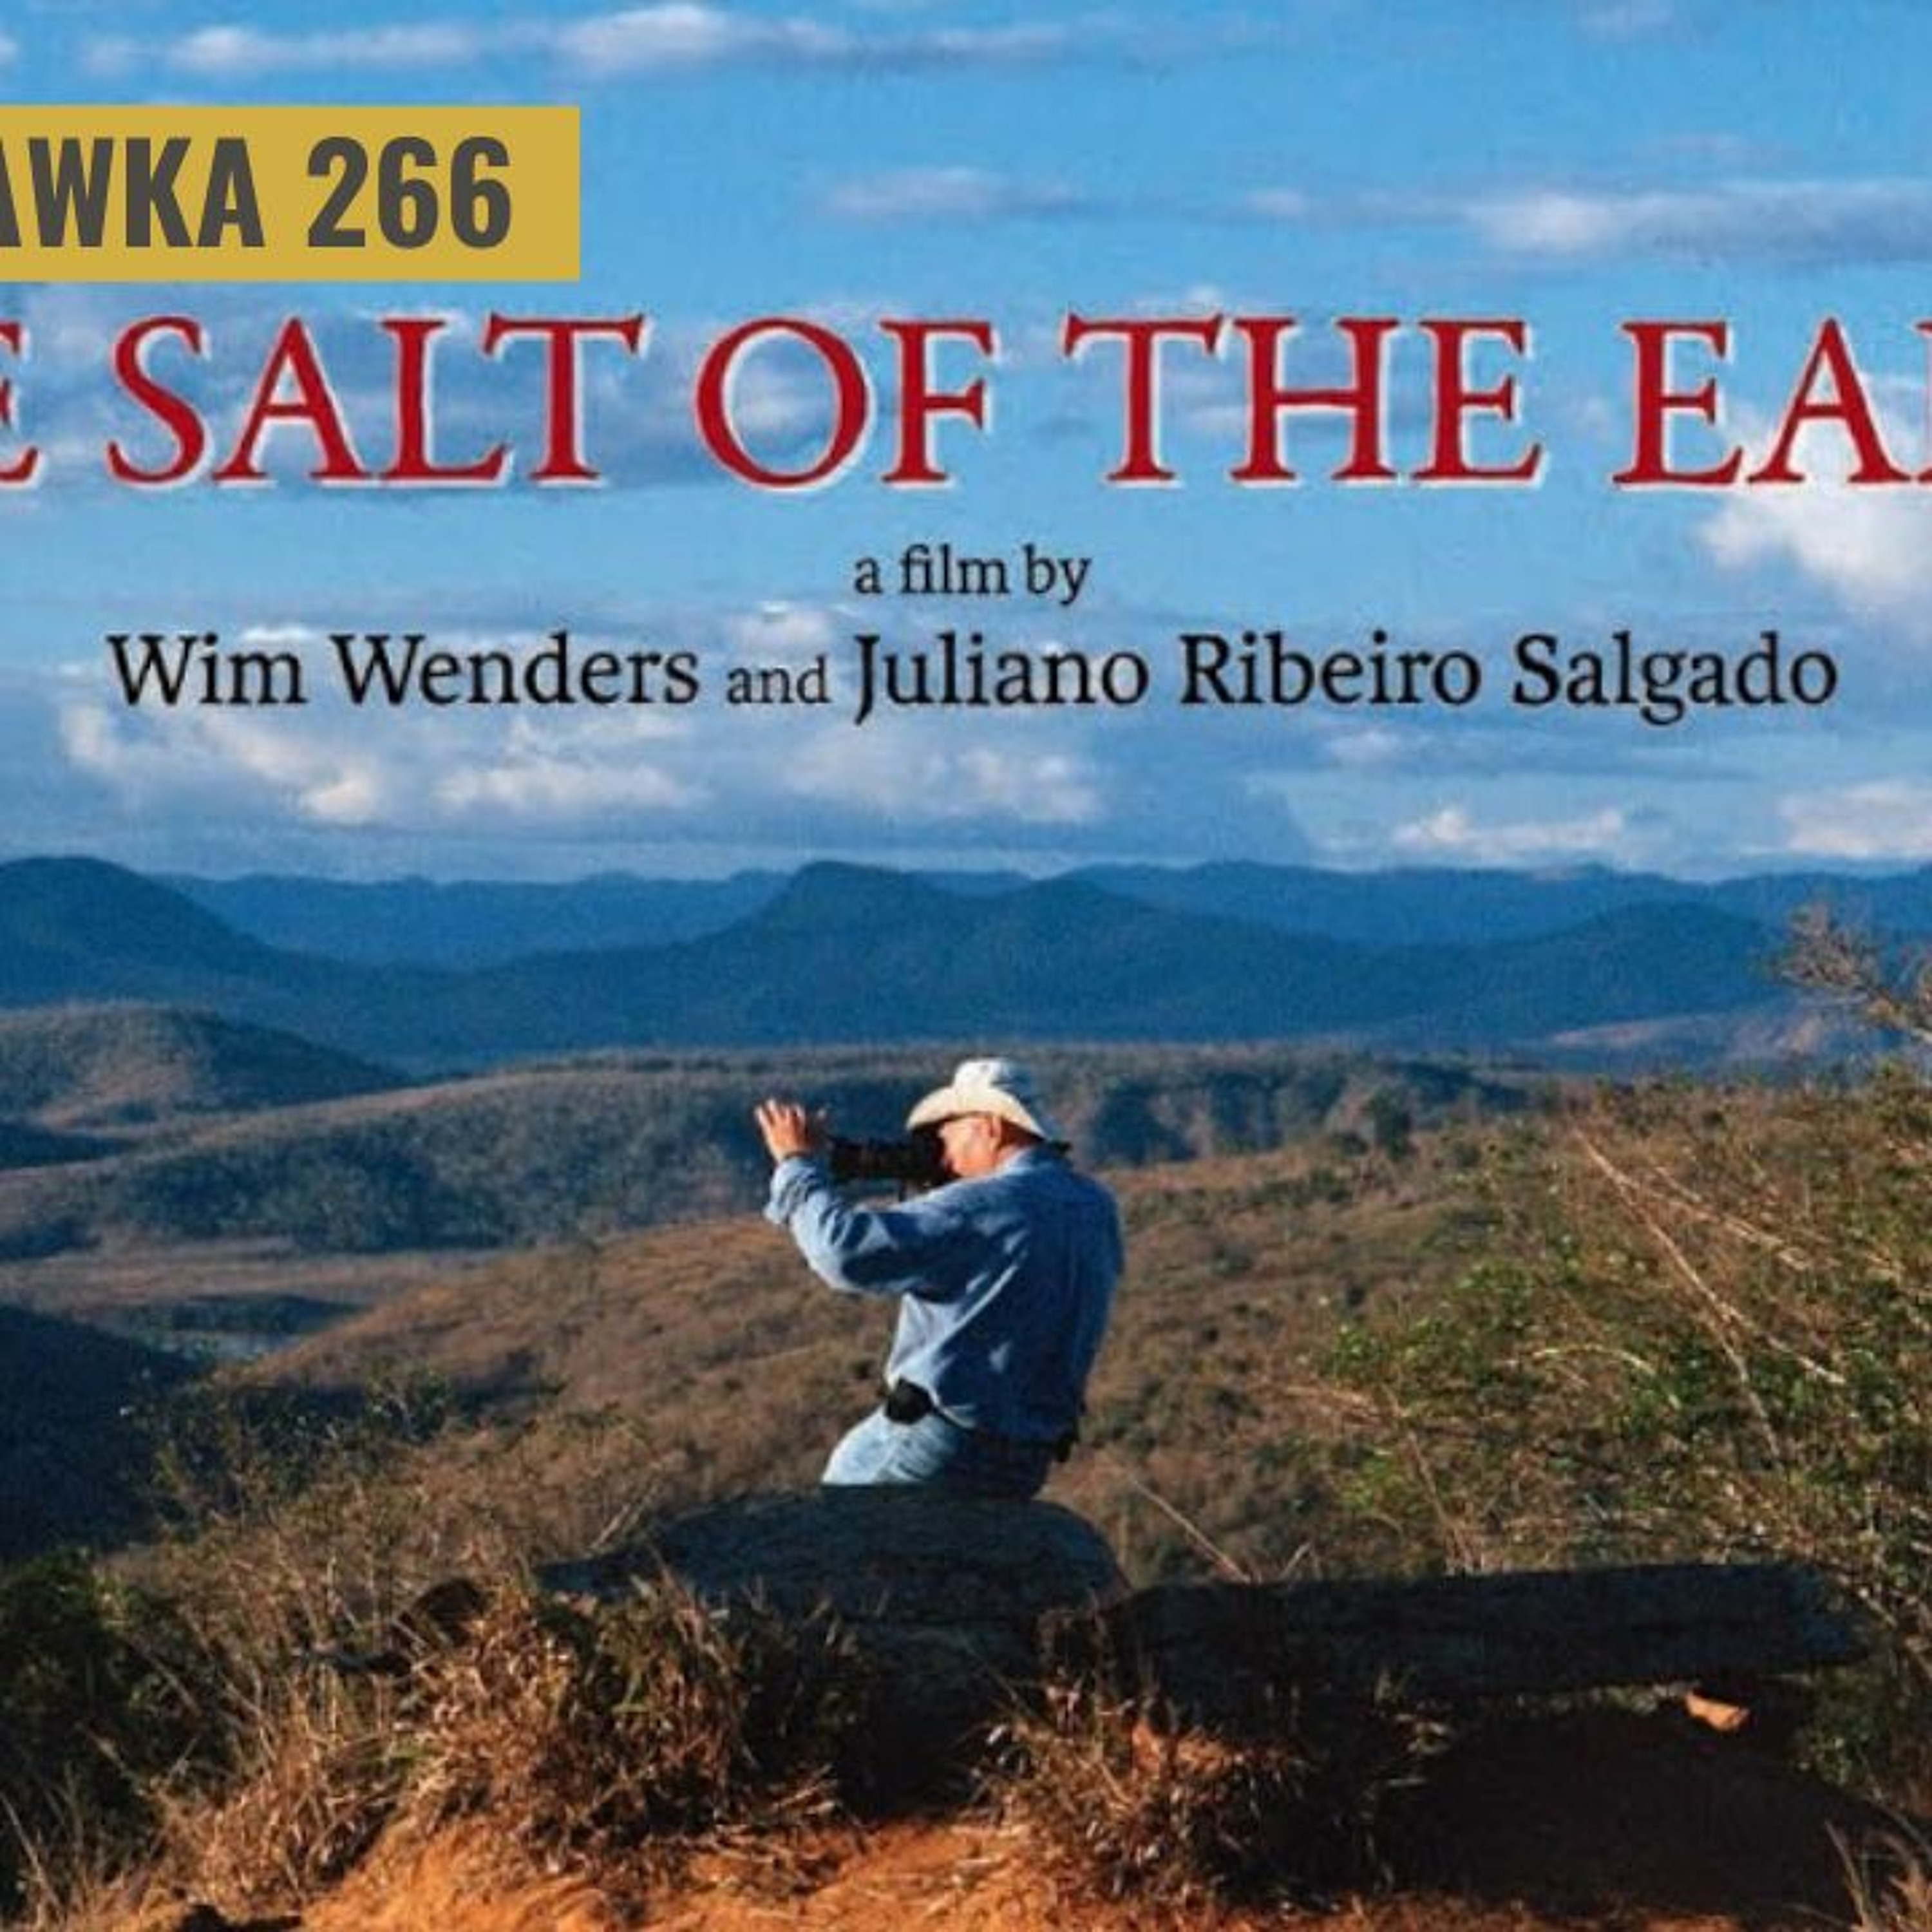 Obejrzyj 'Sól ziemi' - dokument o Sebastiao Salgado 📷Foto Kawka☕️ 266